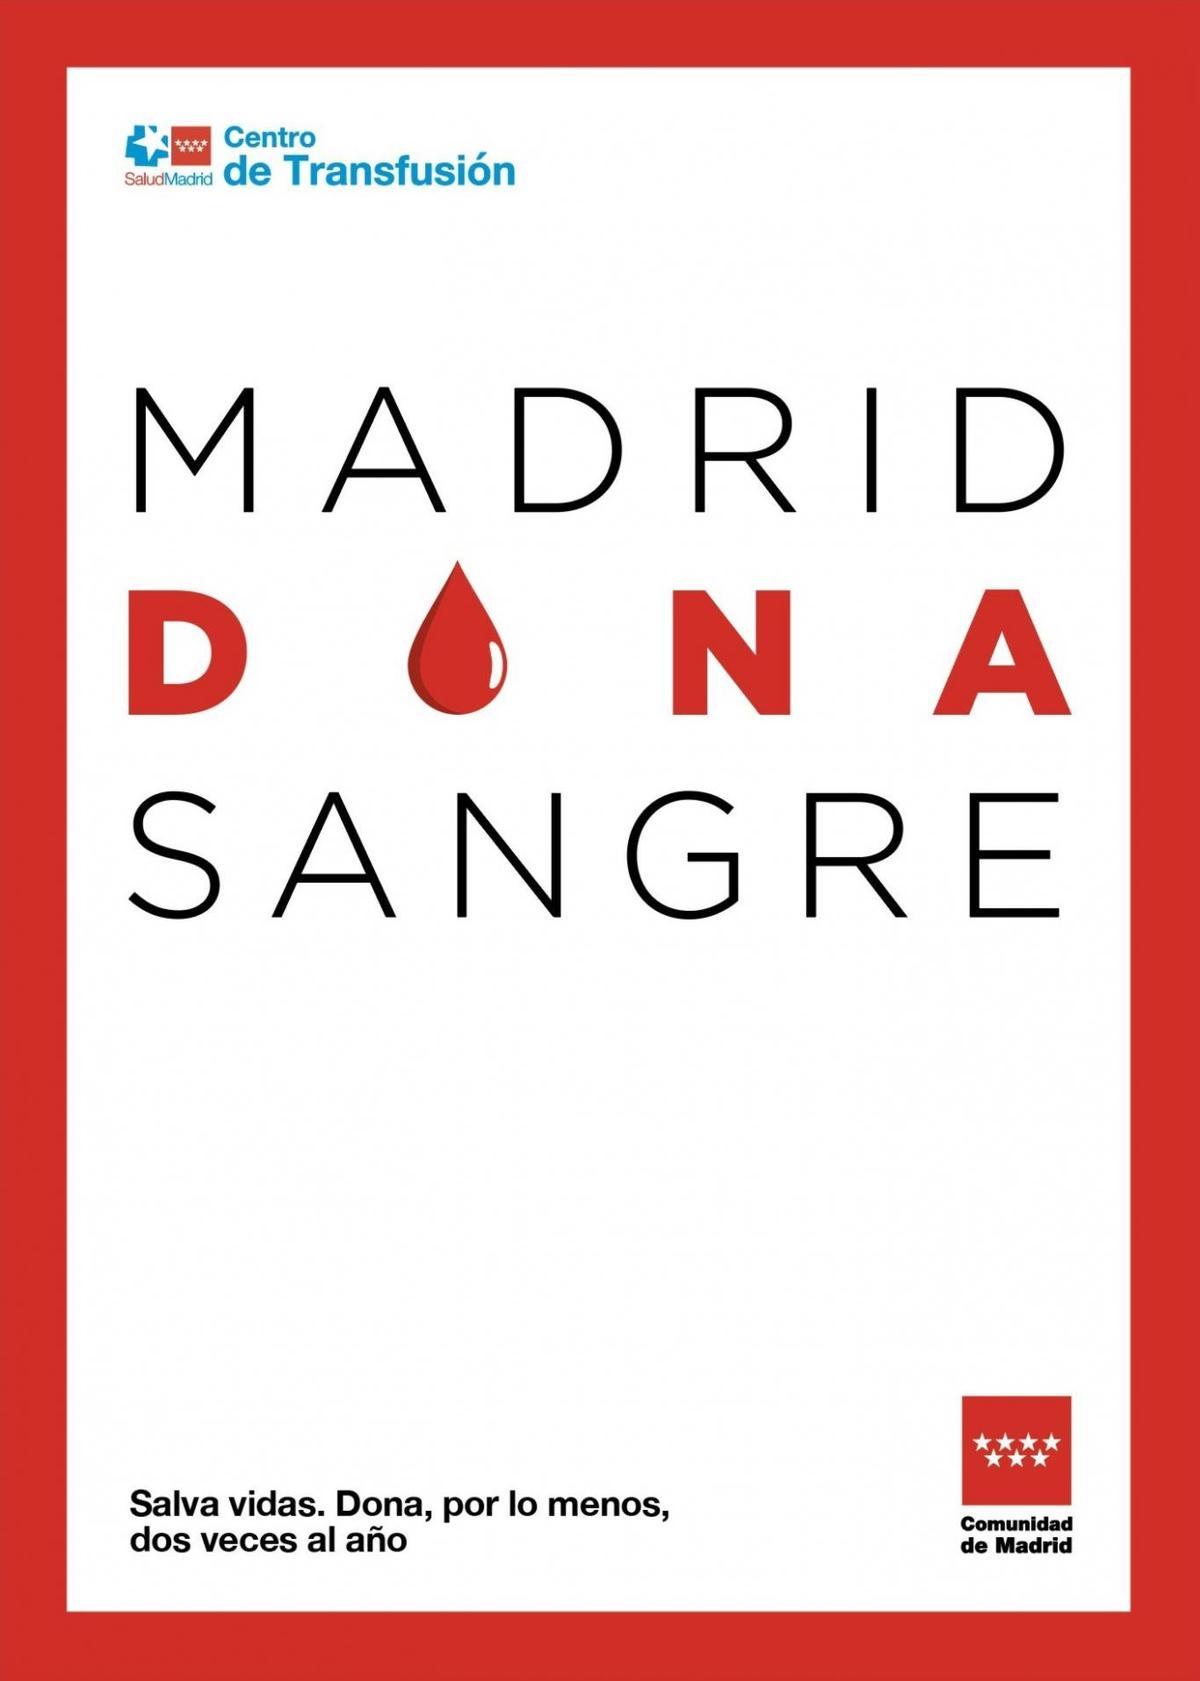 Cartel de la campaña 'Madrid dona sangre' de la Comunidad de Madrid